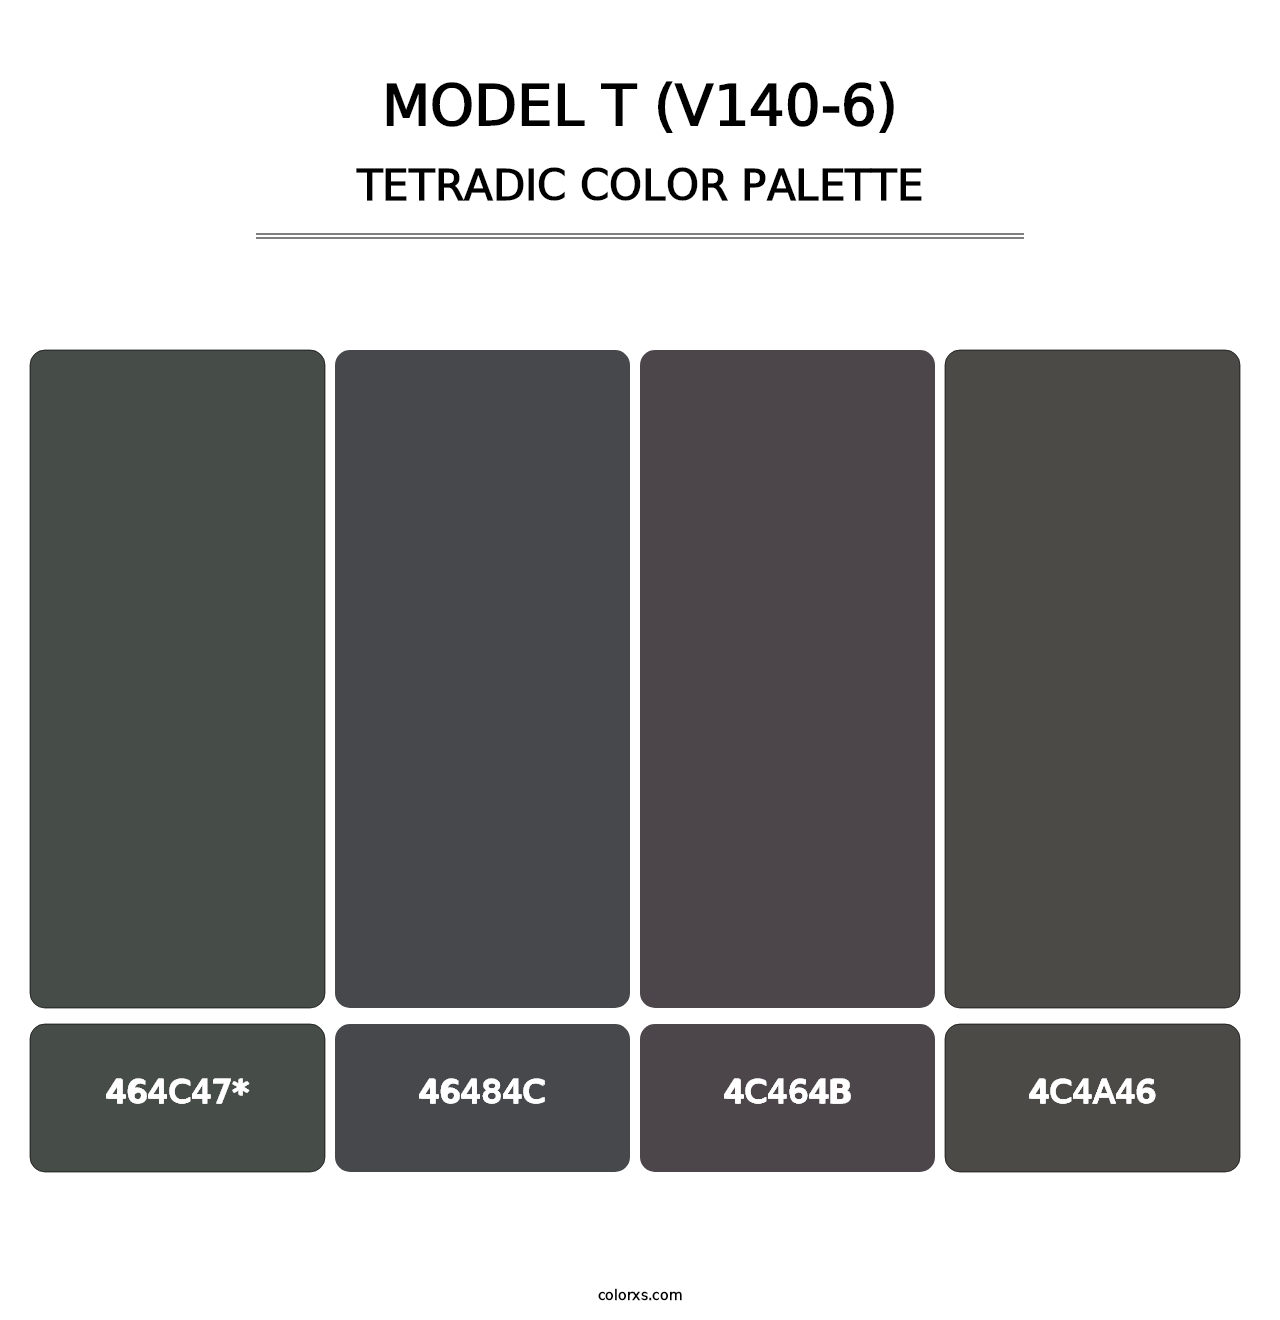 Model T (V140-6) - Tetradic Color Palette